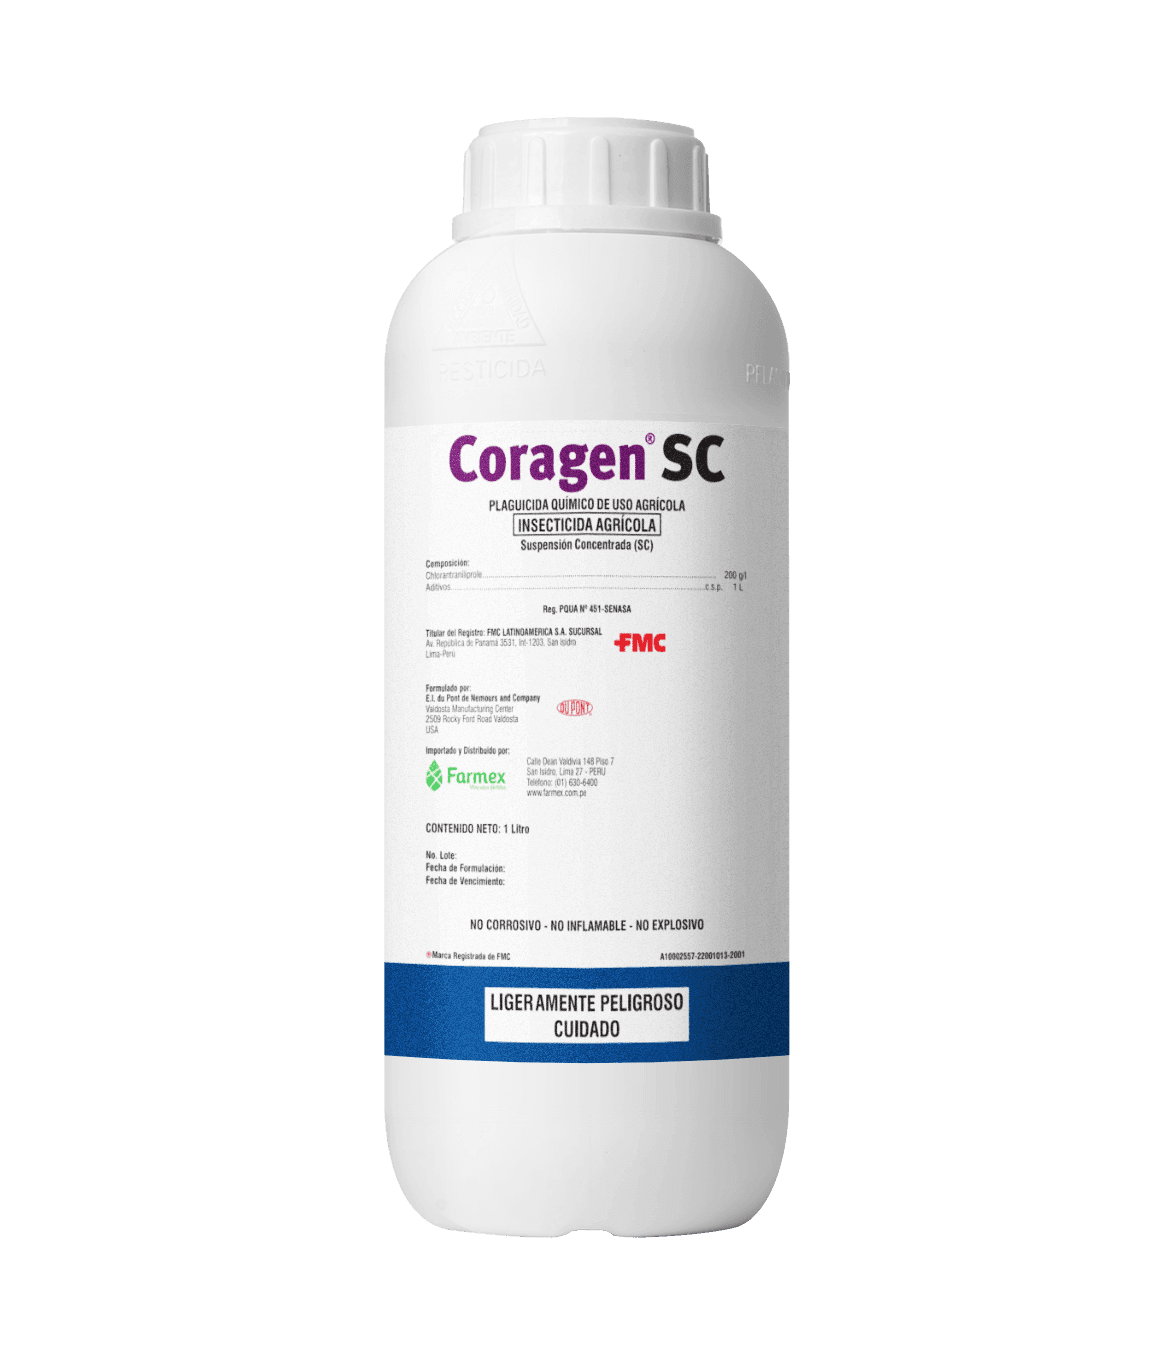 Coragen SC